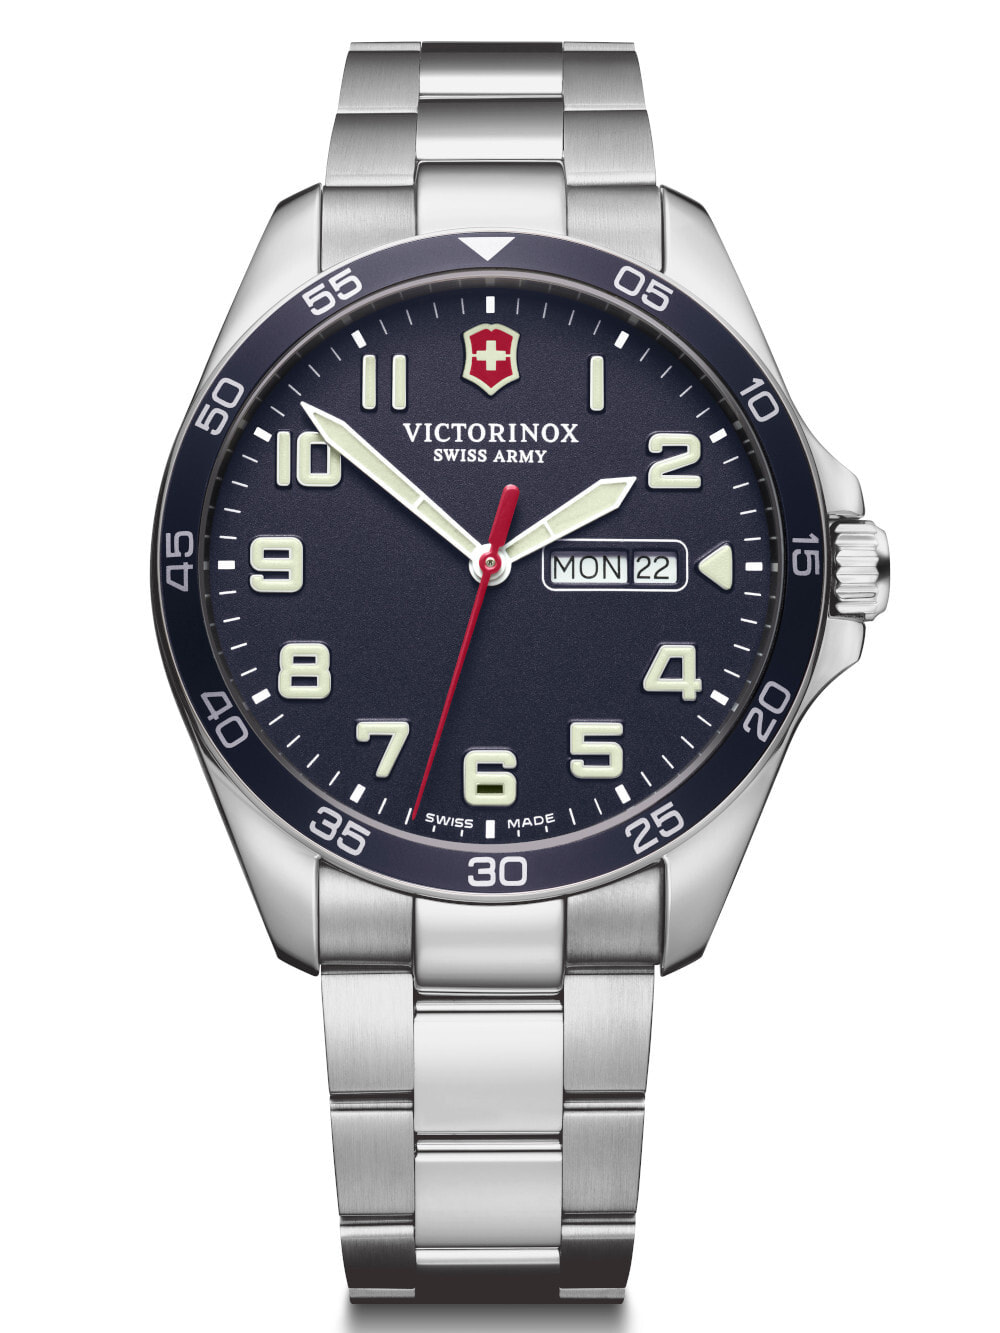 Мужские наручные часы с серебристым браслетом Victorinox 241851 Fieldforce Mens 42mm 10ATM